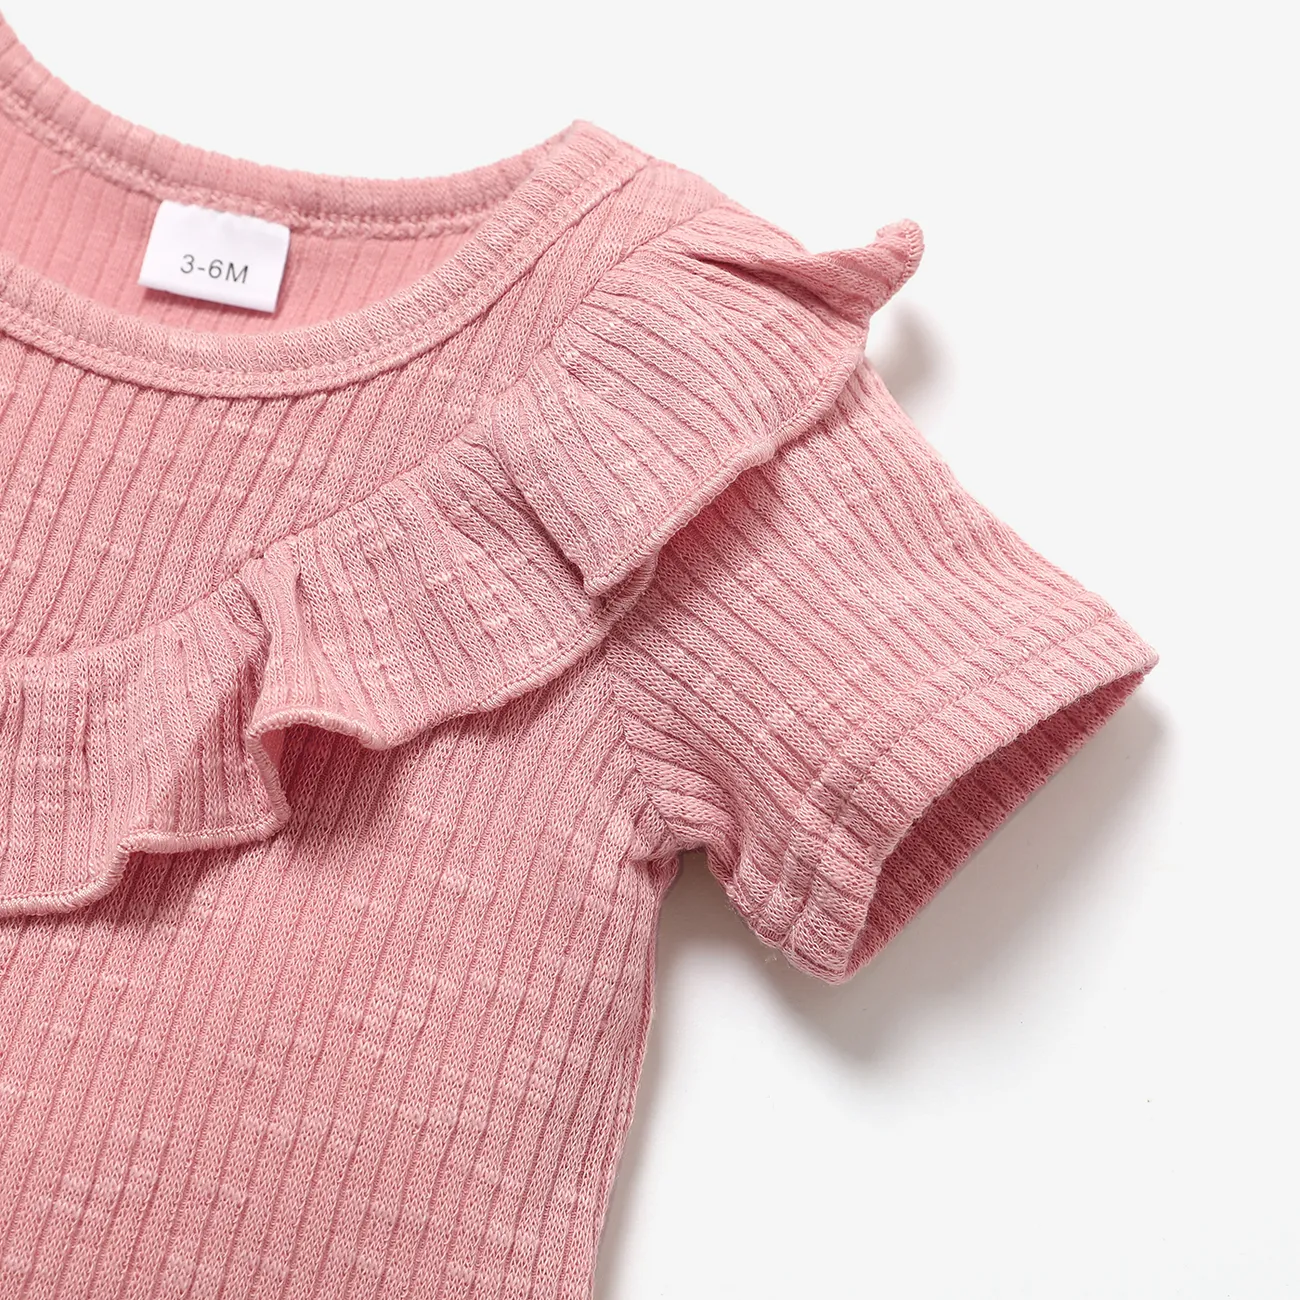 2件 嬰兒 女 荷葉邊 基礎 長袖 嬰兒套裝 粉色 big image 1